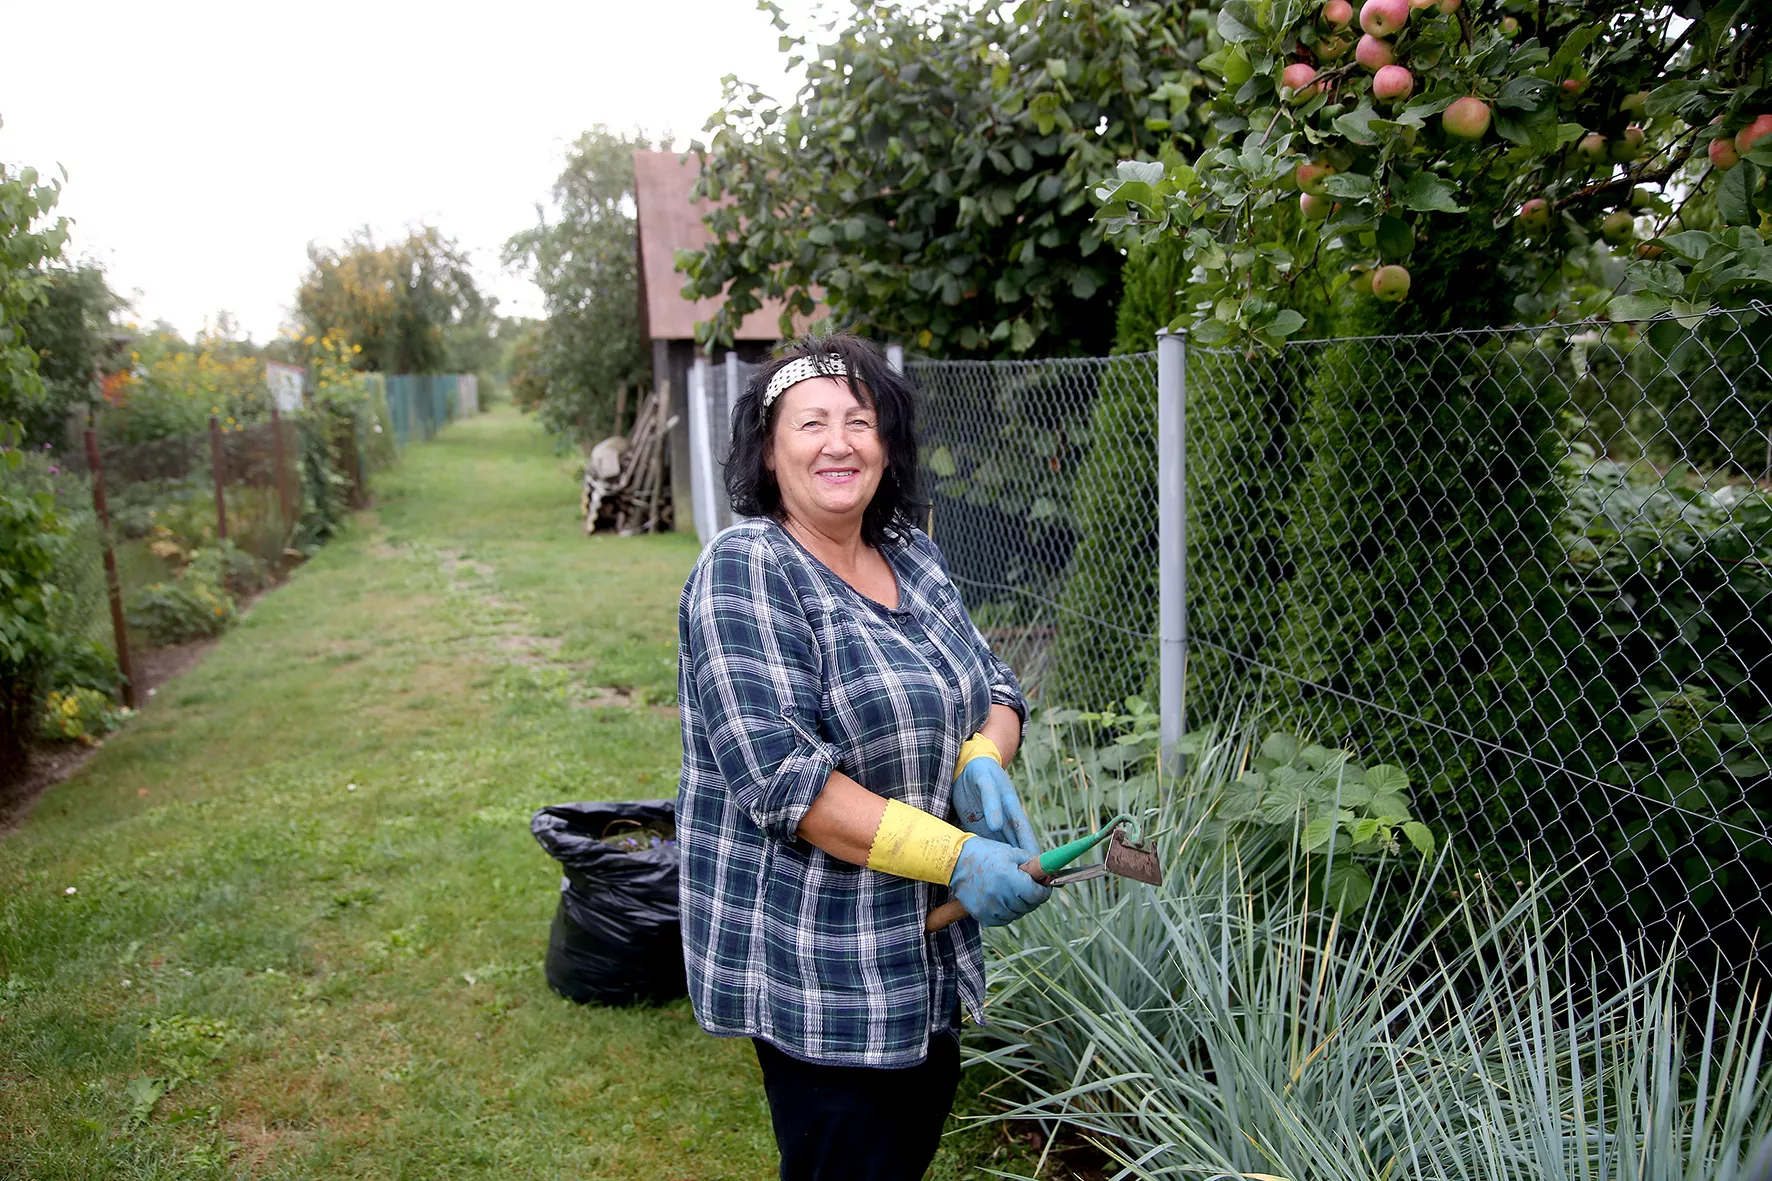 Apžiūrėdama darže besipuikuojančias daržoves su šypsena veide Justinavos sodų aktualijas mums dėsto ponia Valė. A. Barzdžiaus nuotr. 